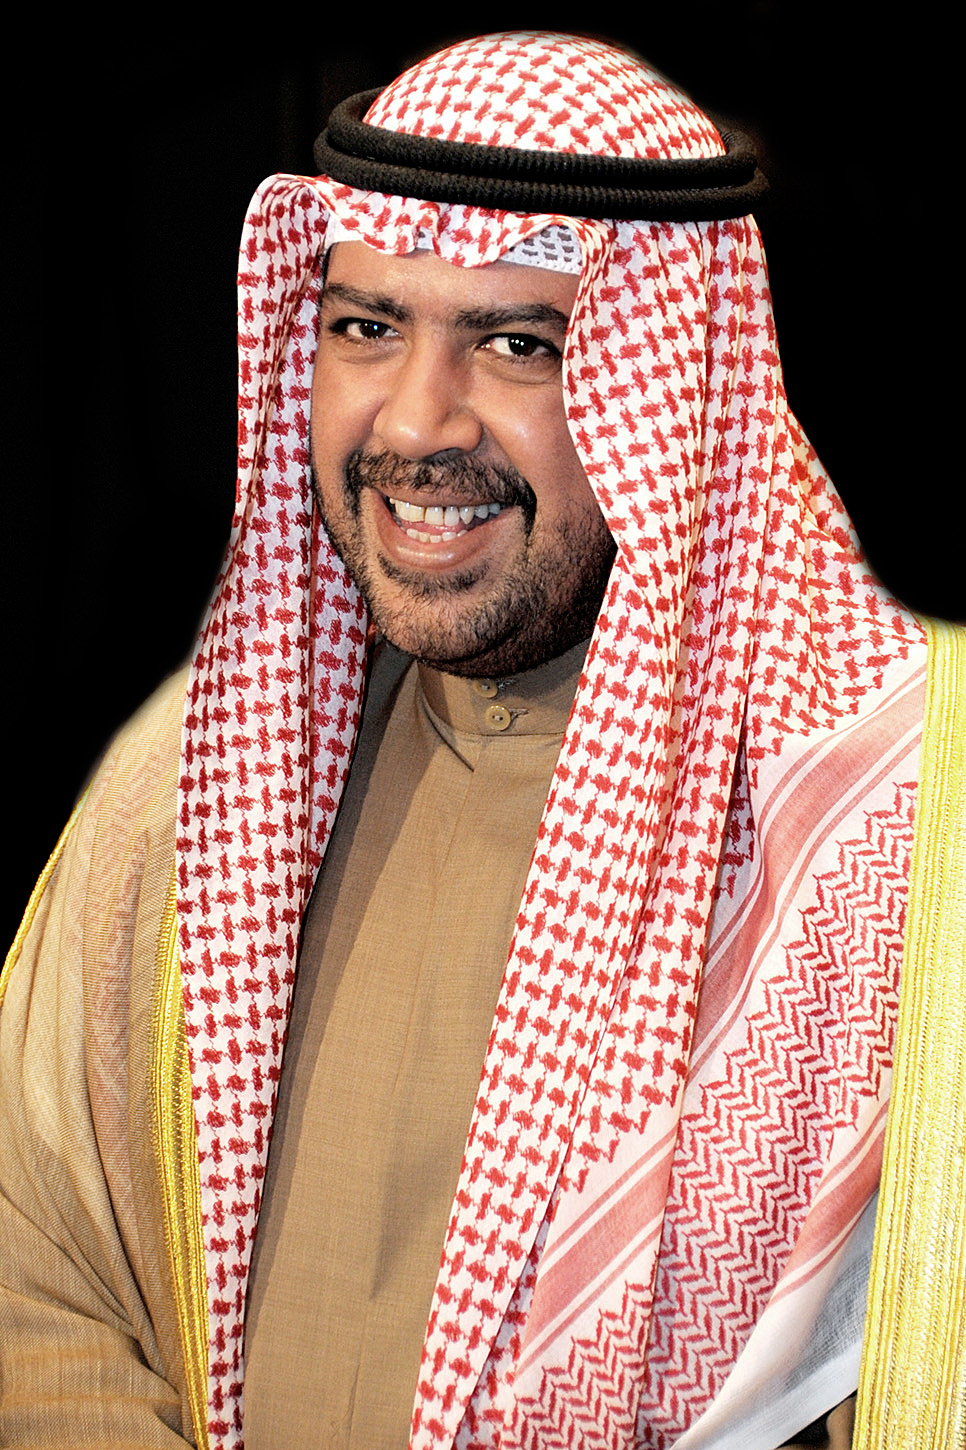 Chairman of the Association of the National Olympics Committees (ANOC), Sheikh Ahmad Al-Fahad Al-Ahmad Al-Sabah